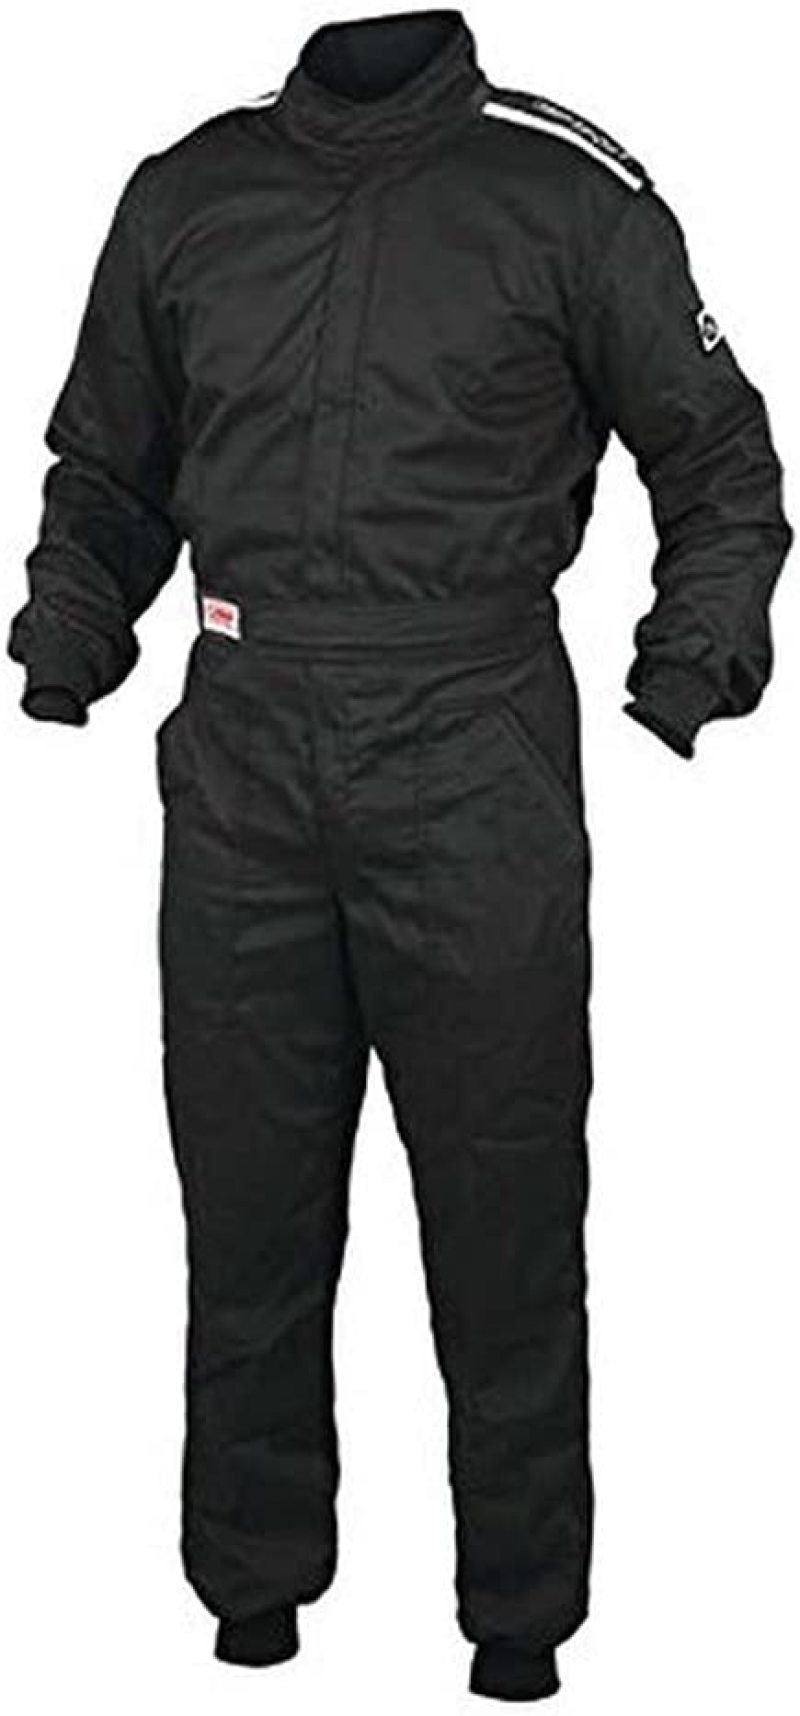 OMP Os 10 Suit - XXLarge (Black) - IA0-1901-A01-071-XXL